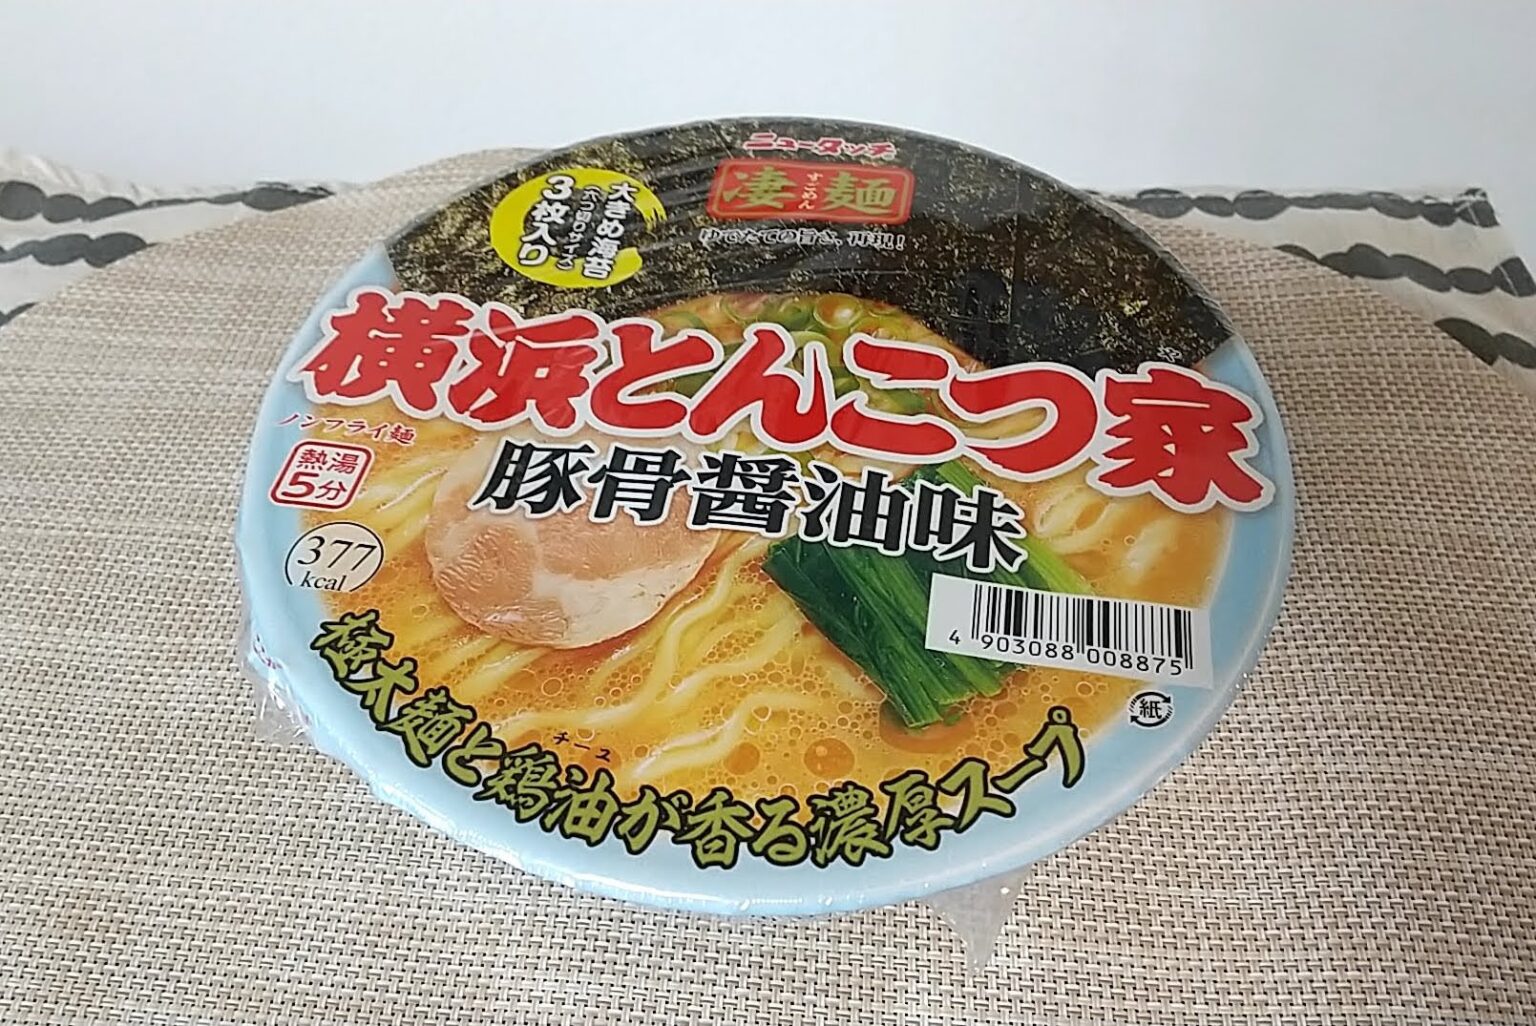 ニュータッチの凄麺シリーズ「横浜とんこつ家」のカップ麺をいただく | ハジカラ